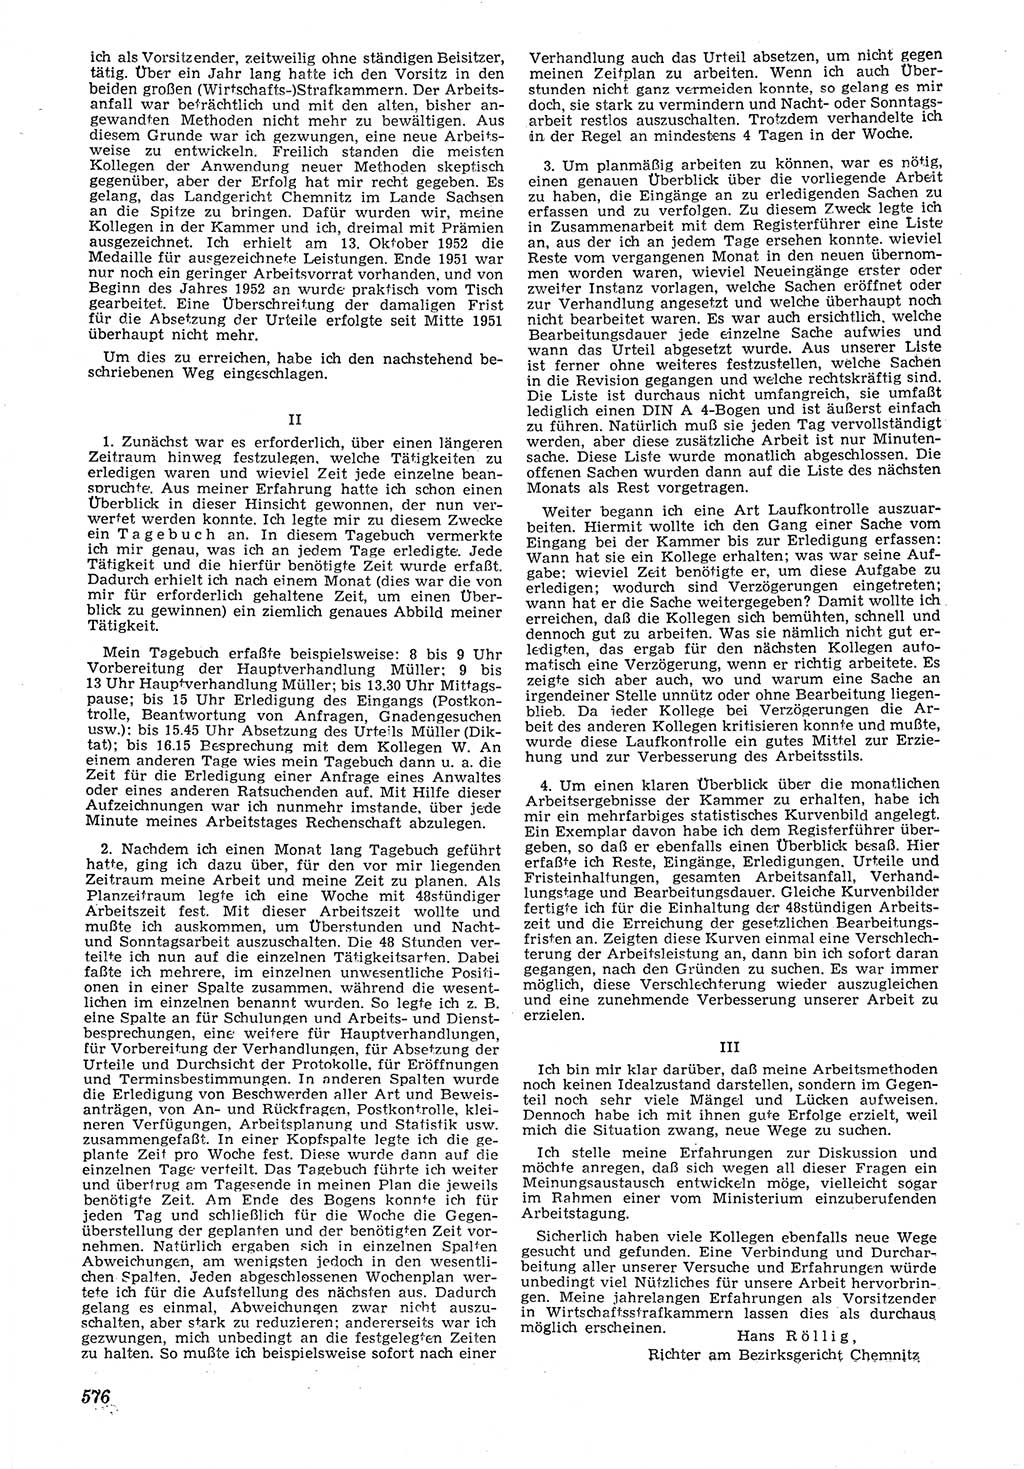 Neue Justiz (NJ), Zeitschrift für Recht und Rechtswissenschaft [Deutsche Demokratische Republik (DDR)], 6. Jahrgang 1952, Seite 576 (NJ DDR 1952, S. 576)